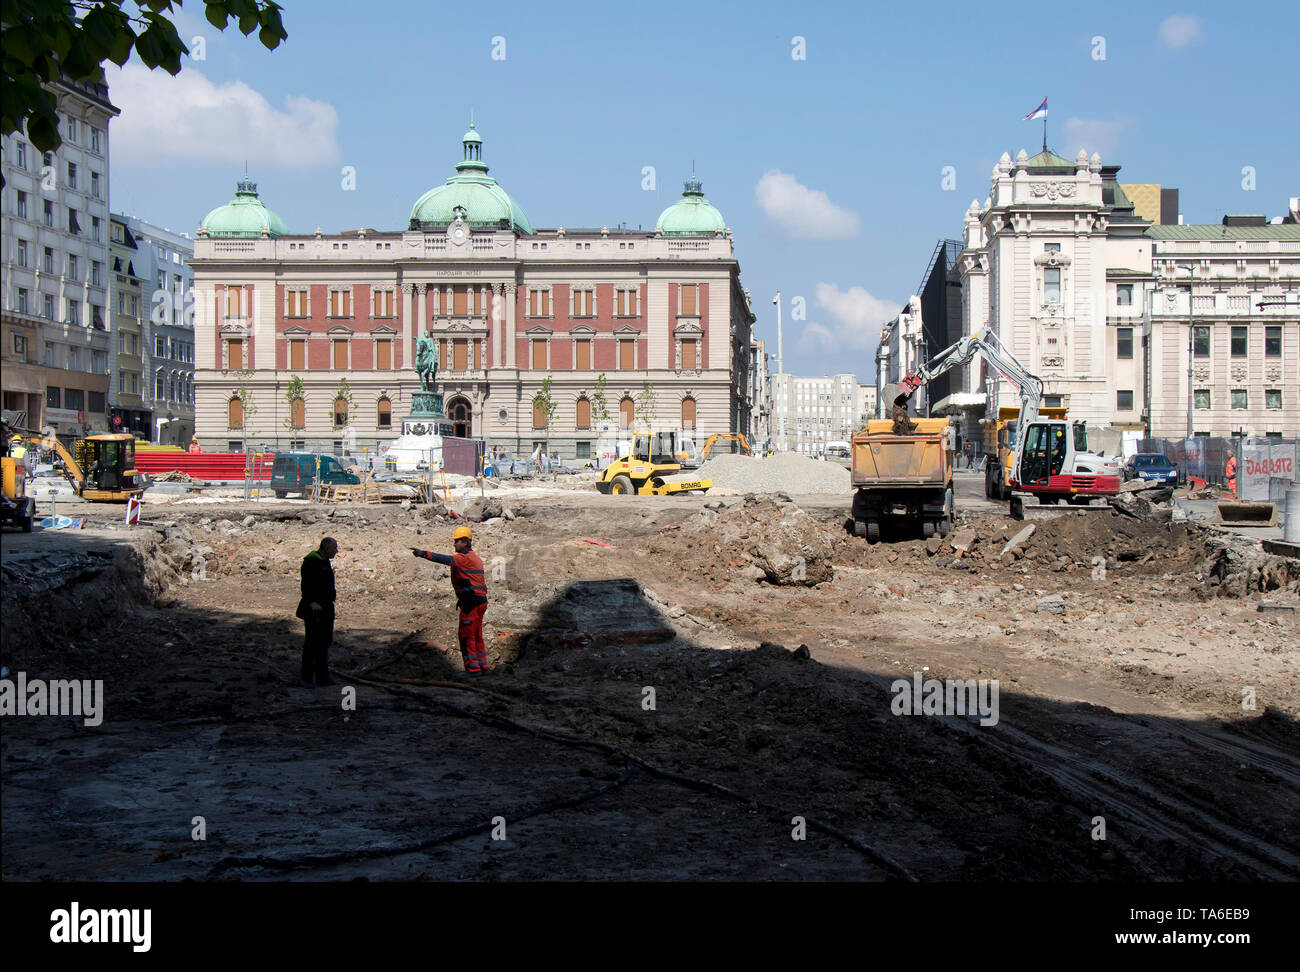 Belgrad, Serbien - 18. April 2019: Maschinen und Menschen arbeiten auf der Baustelle auf dem Platz der Republik, die öffentlichen Debatten verursacht Stockfoto